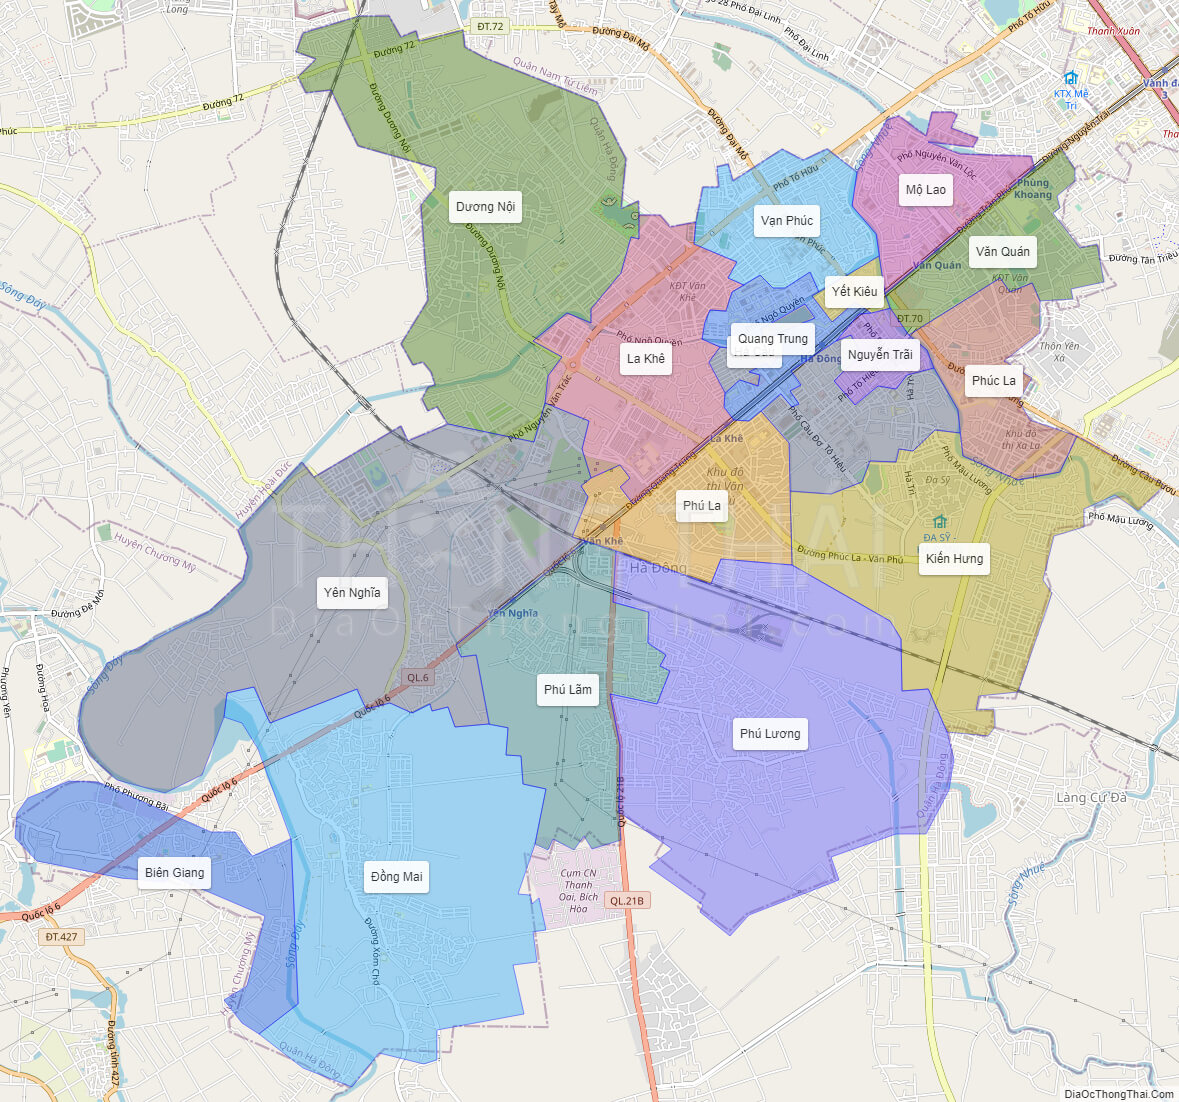 Bản đồ quận Hà Đông:
Bản đồ quận Hà Đông sẽ giúp bạn dễ dàng tìm kiếm các quán ăn, cửa hàng, và địa điểm tham quan hấp dẫn tại khu vực này. Ngoài ra, bạn cũng có thể khám phá những trường đại học và bệnh viện lớn tại đây.